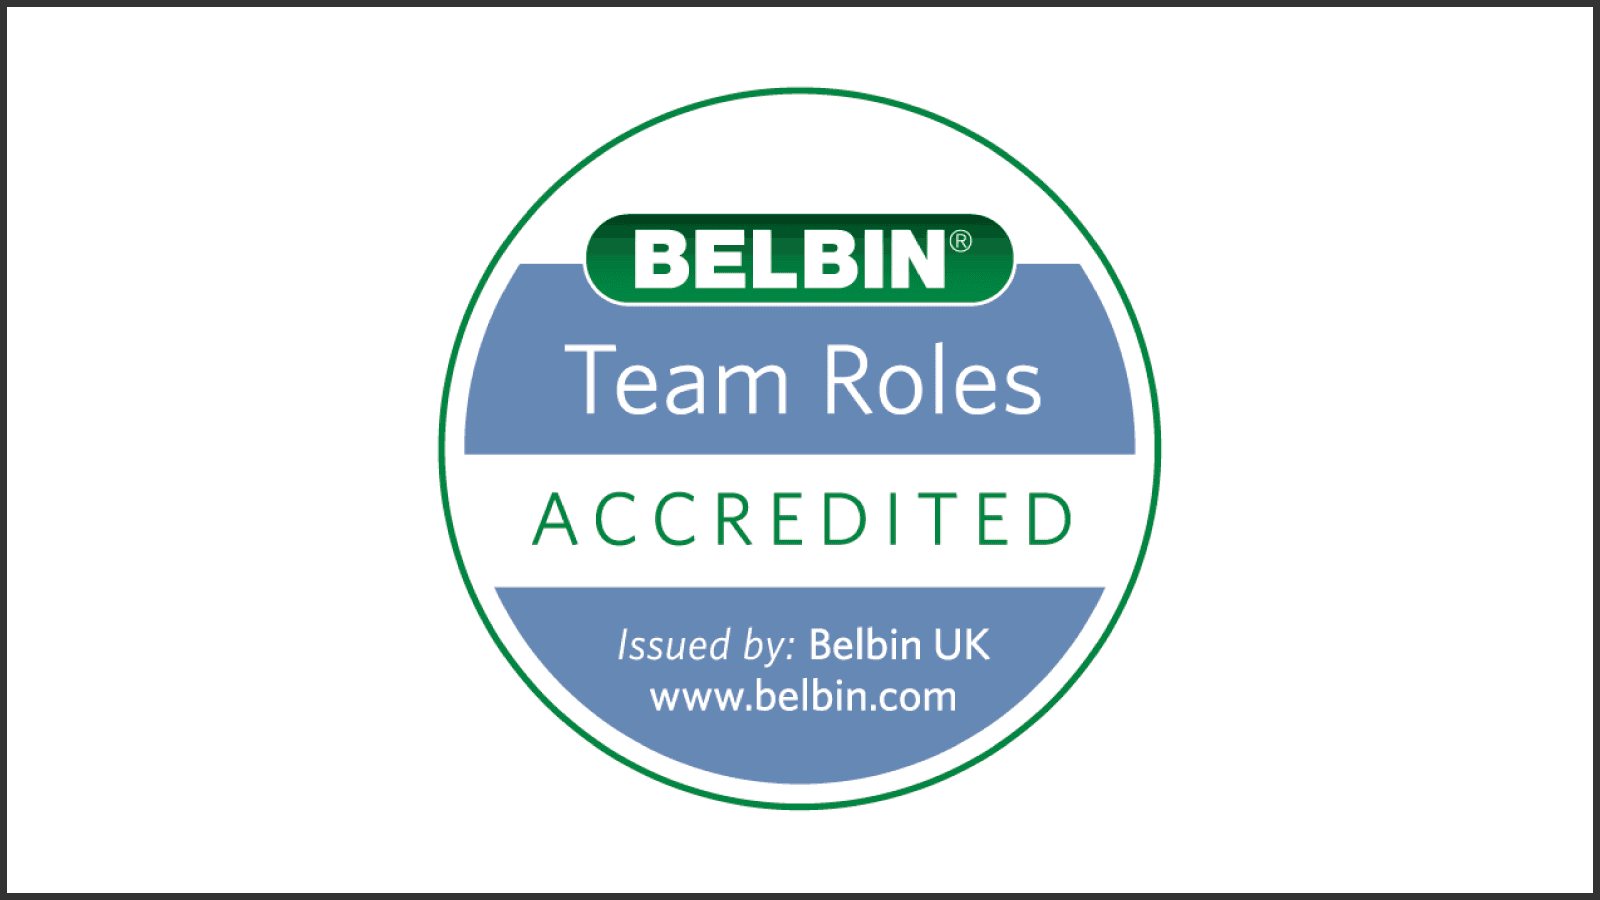 Belbin Team Roles accredited. Issued by: Belbin UK. www.belbin.com